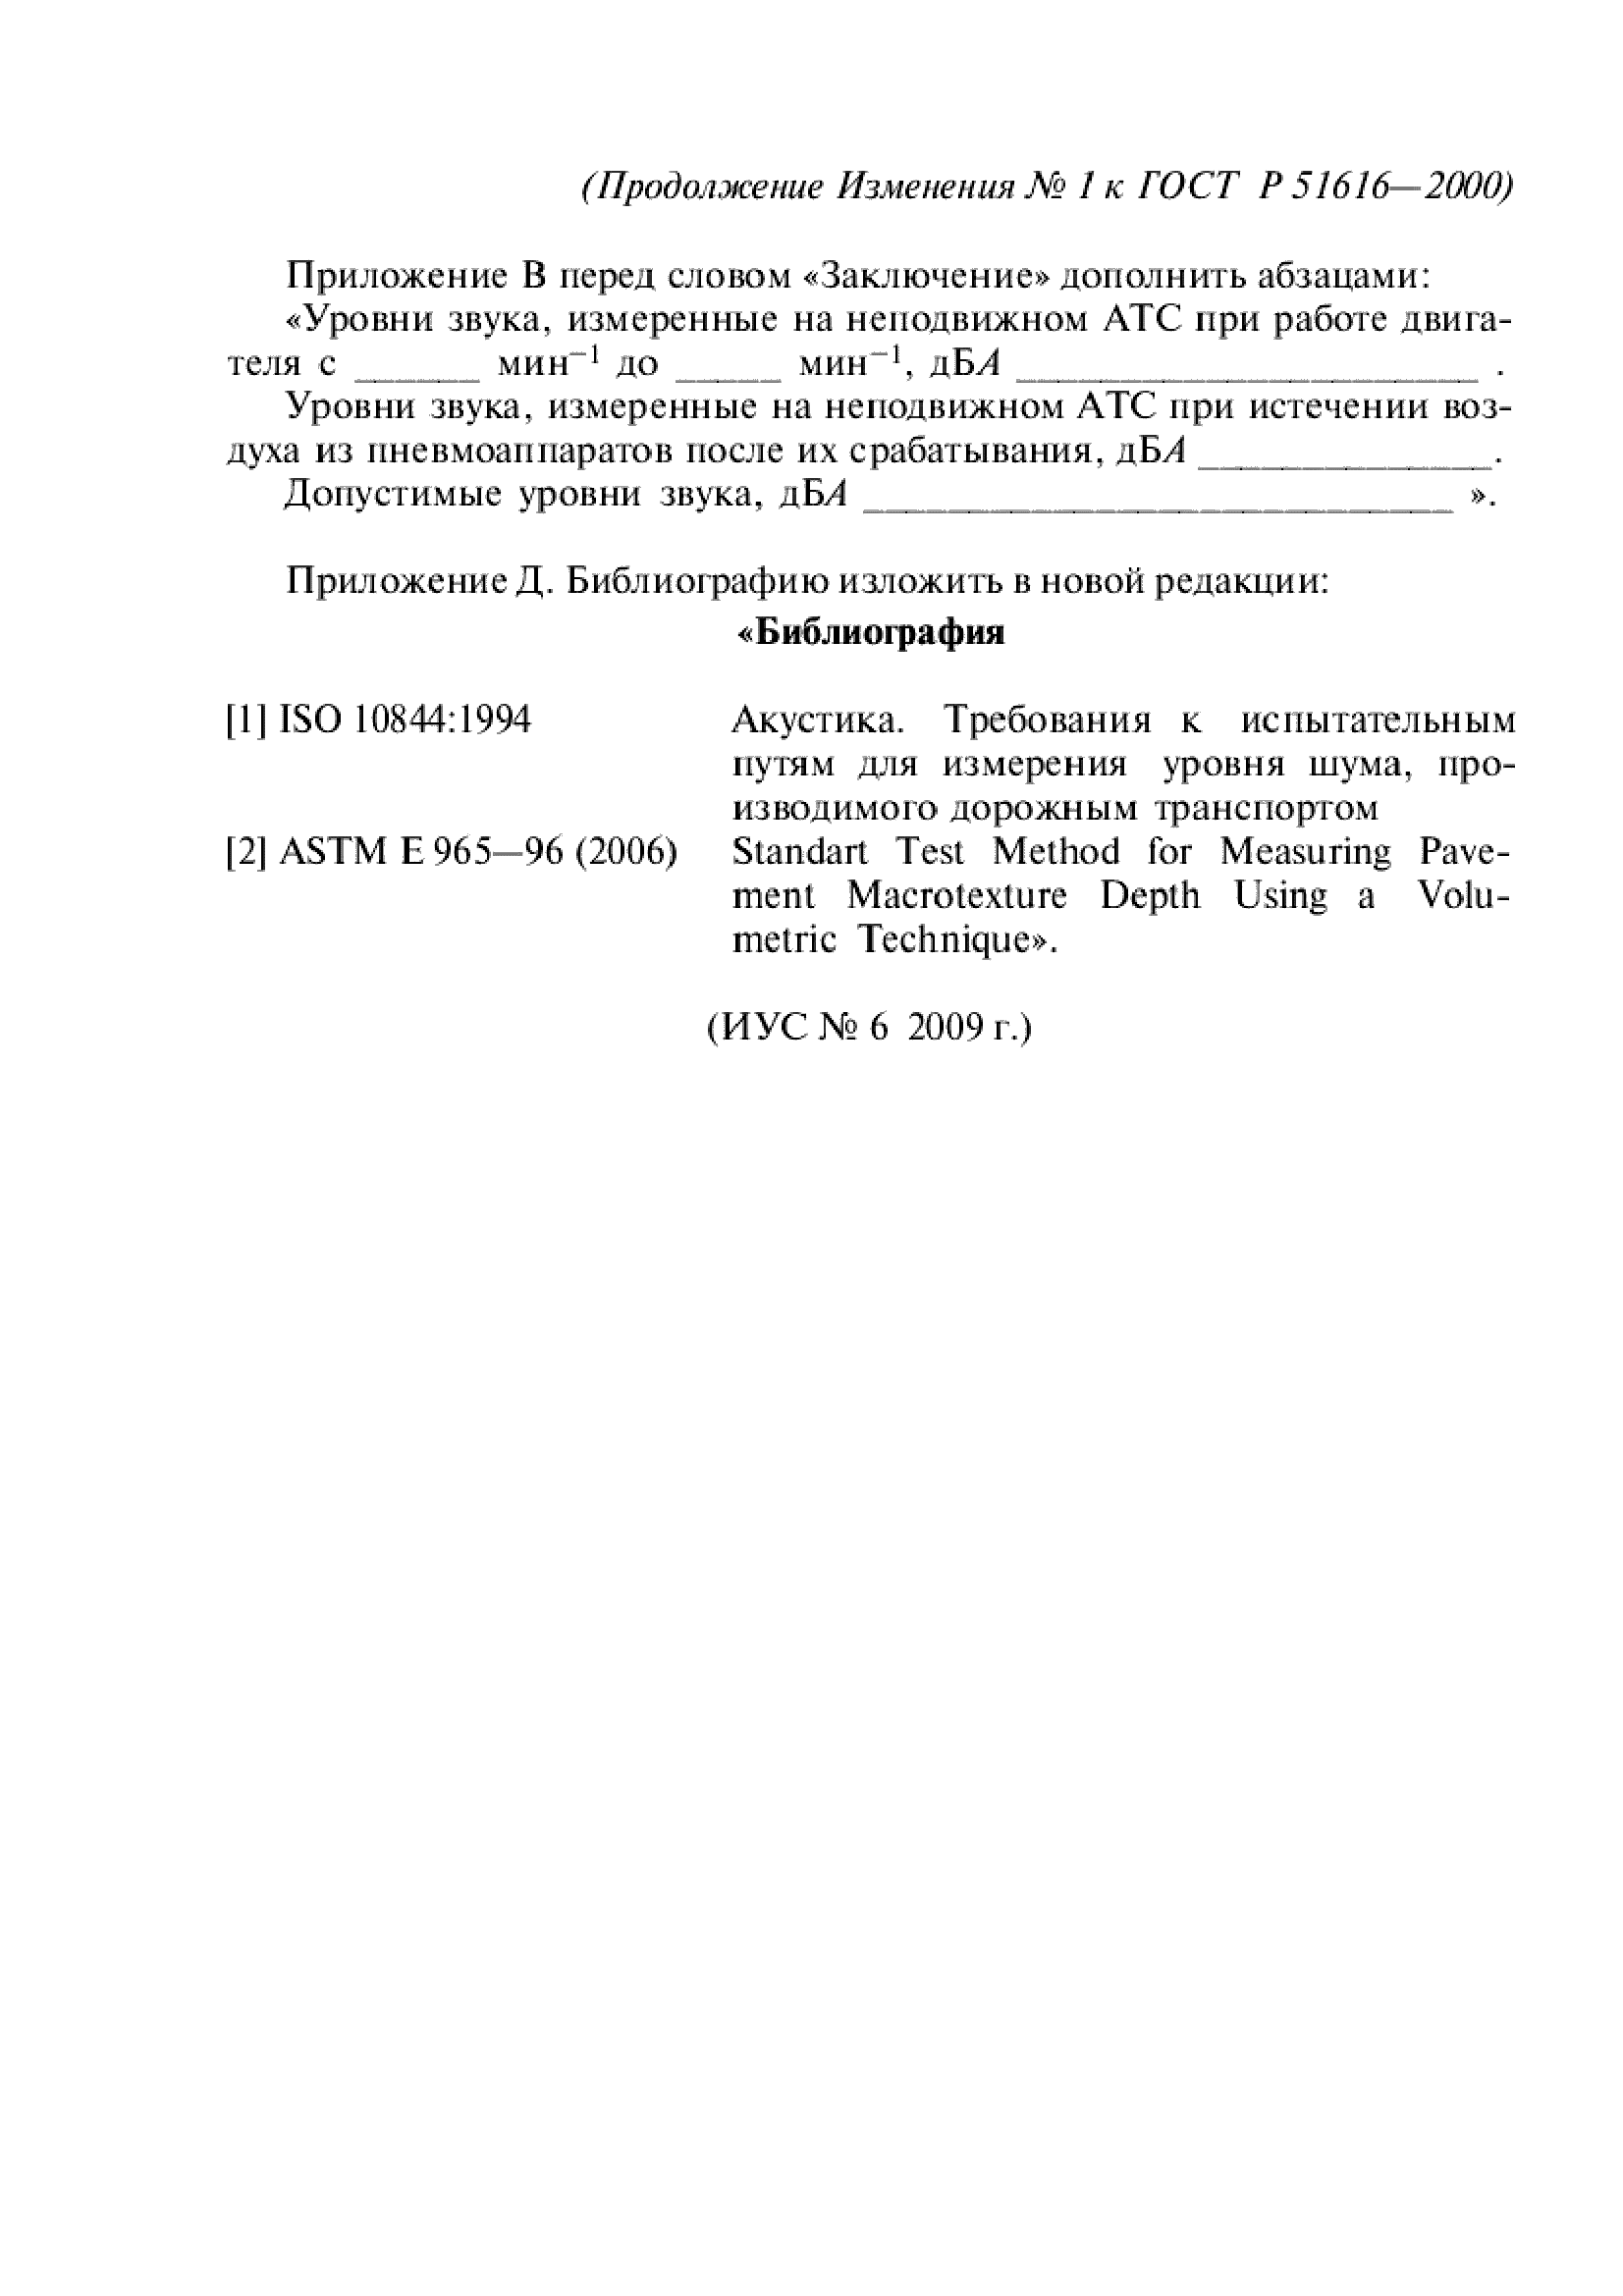 Изменение №1 к ГОСТ Р 51616-2000